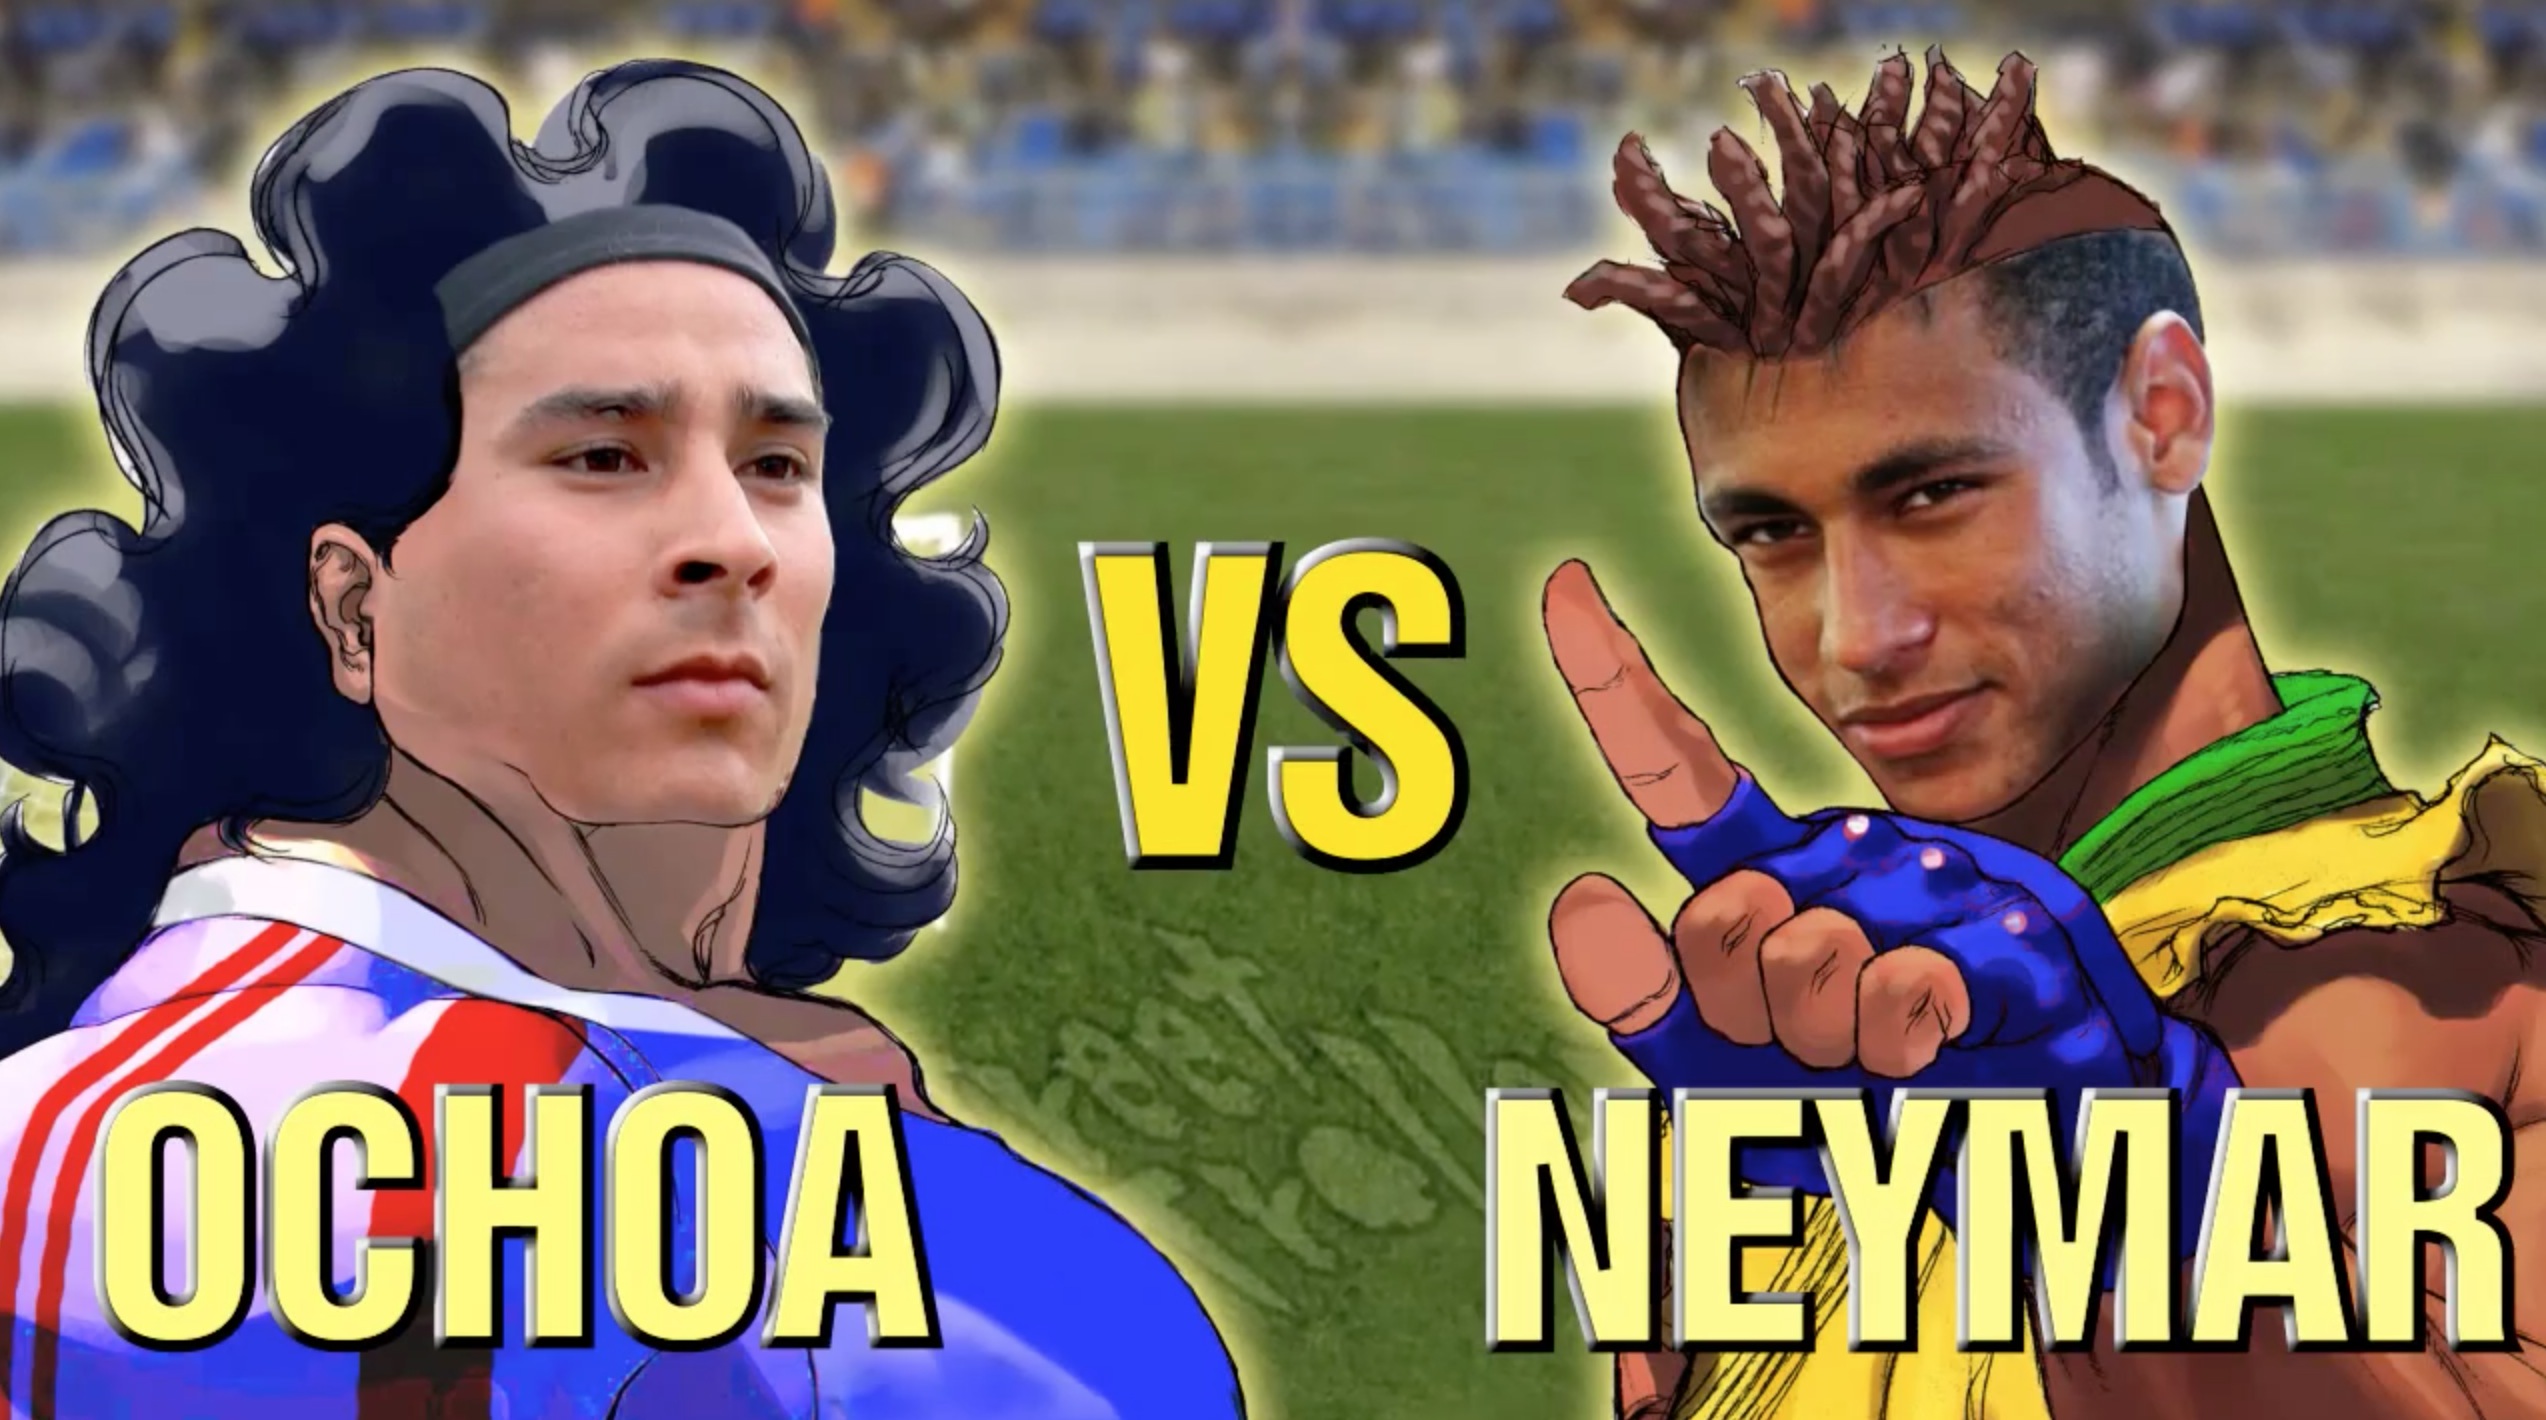 Ochao Neymar Street Fighter